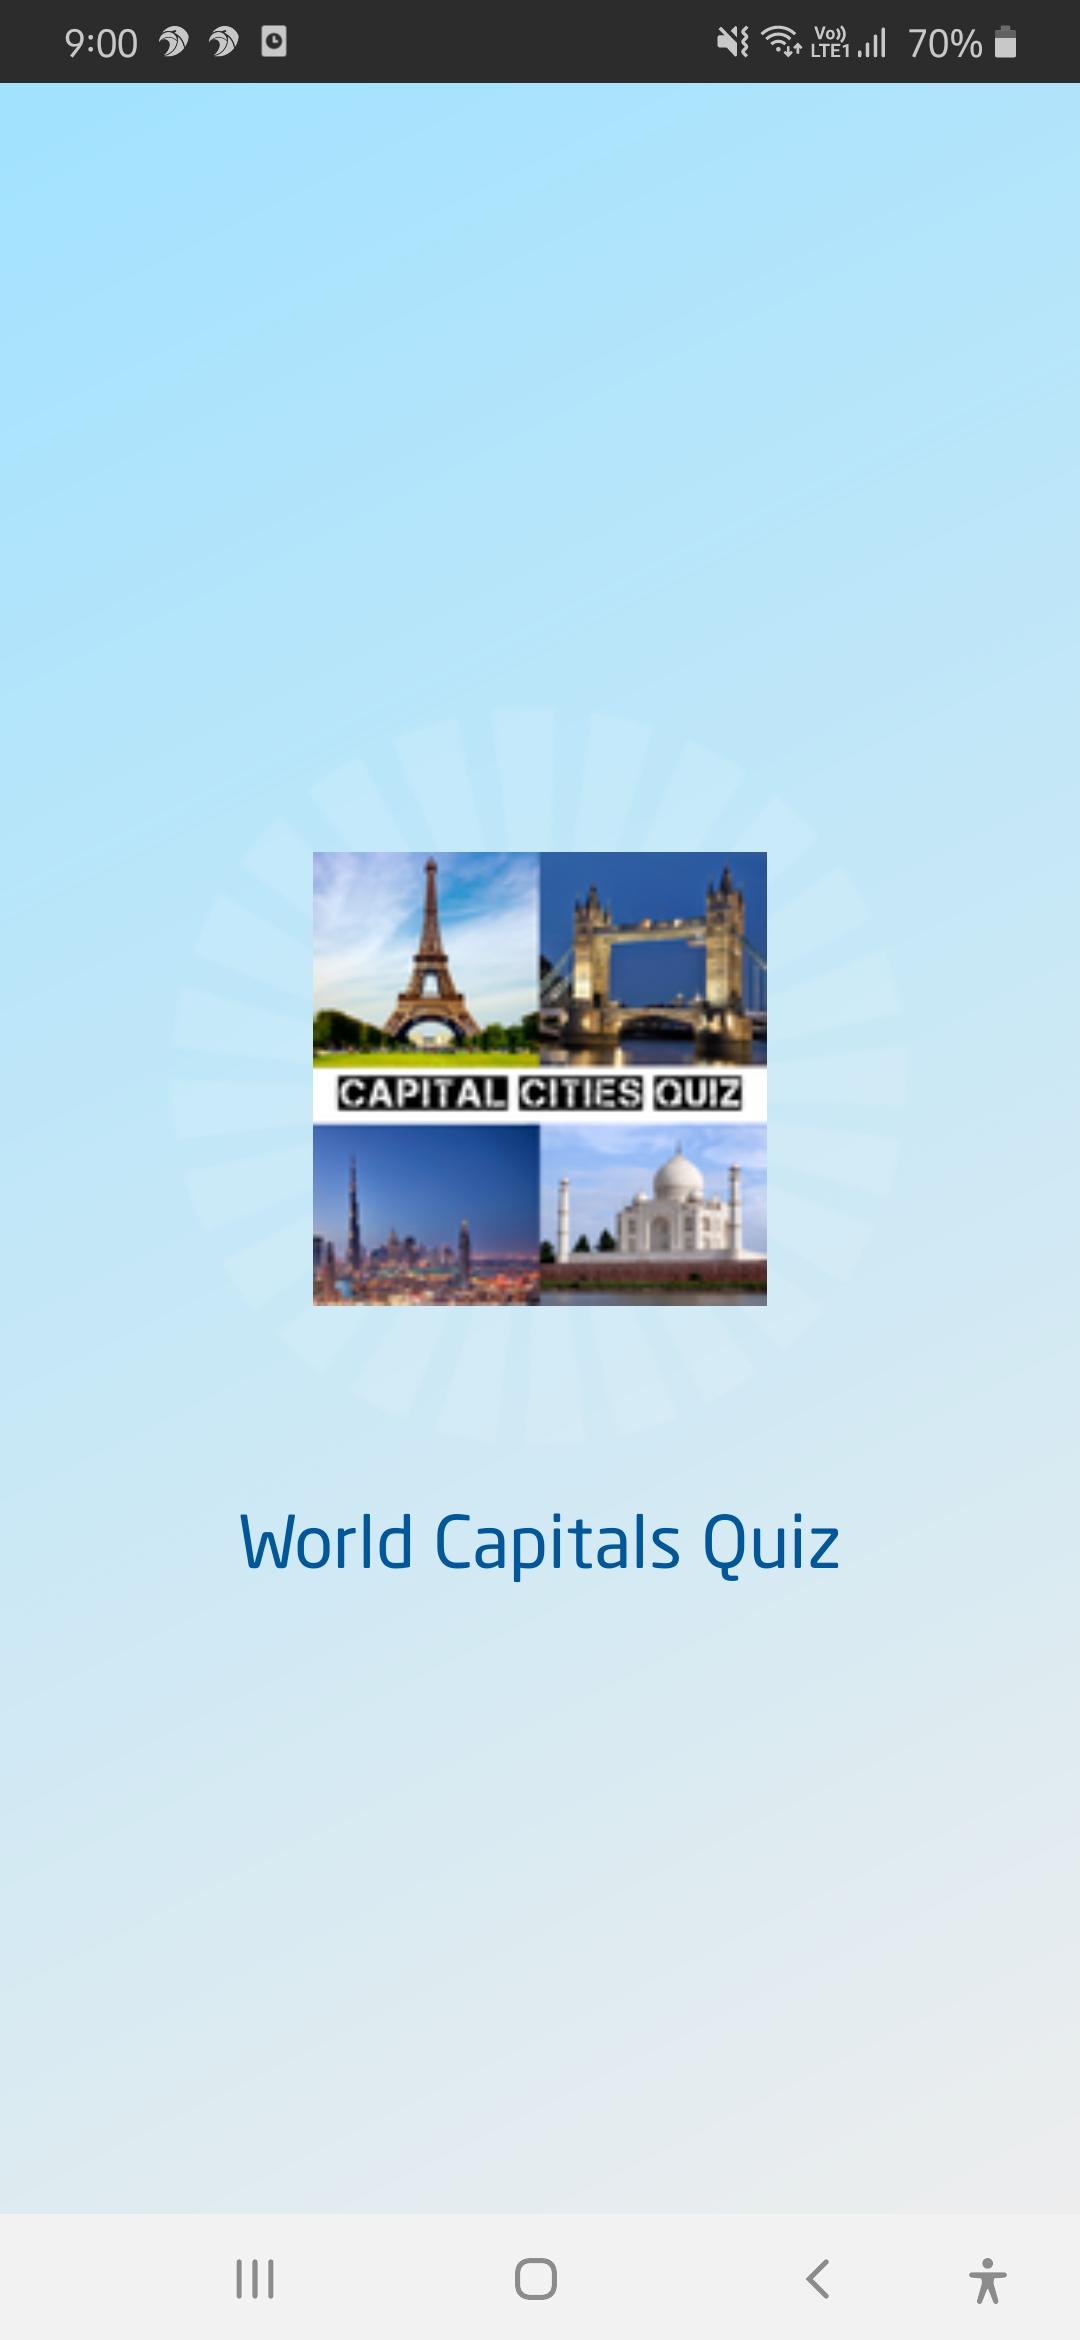 Capital Cities Quiz - World Capitals Quiz Game 3.0 Screenshot 1